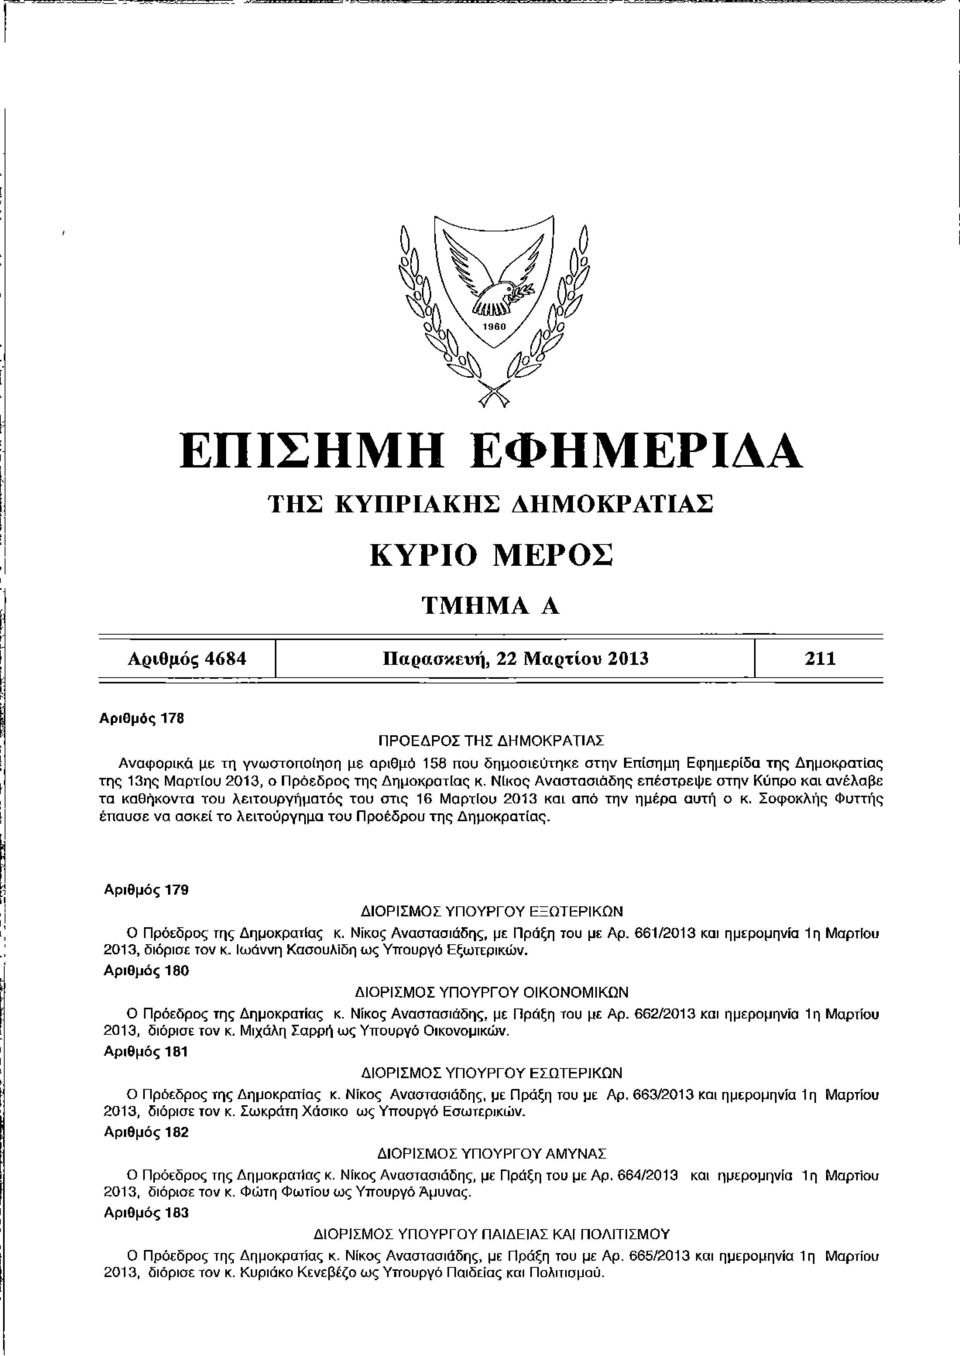 Νίκος Αναστασιάδης επέστρεψε στην Κύπρο και ανέλαβε τα καθήκοντα του λειτουργήματος του στις 16 Μαρτίου 2013 και από την ημέρα αυτή ο κ.